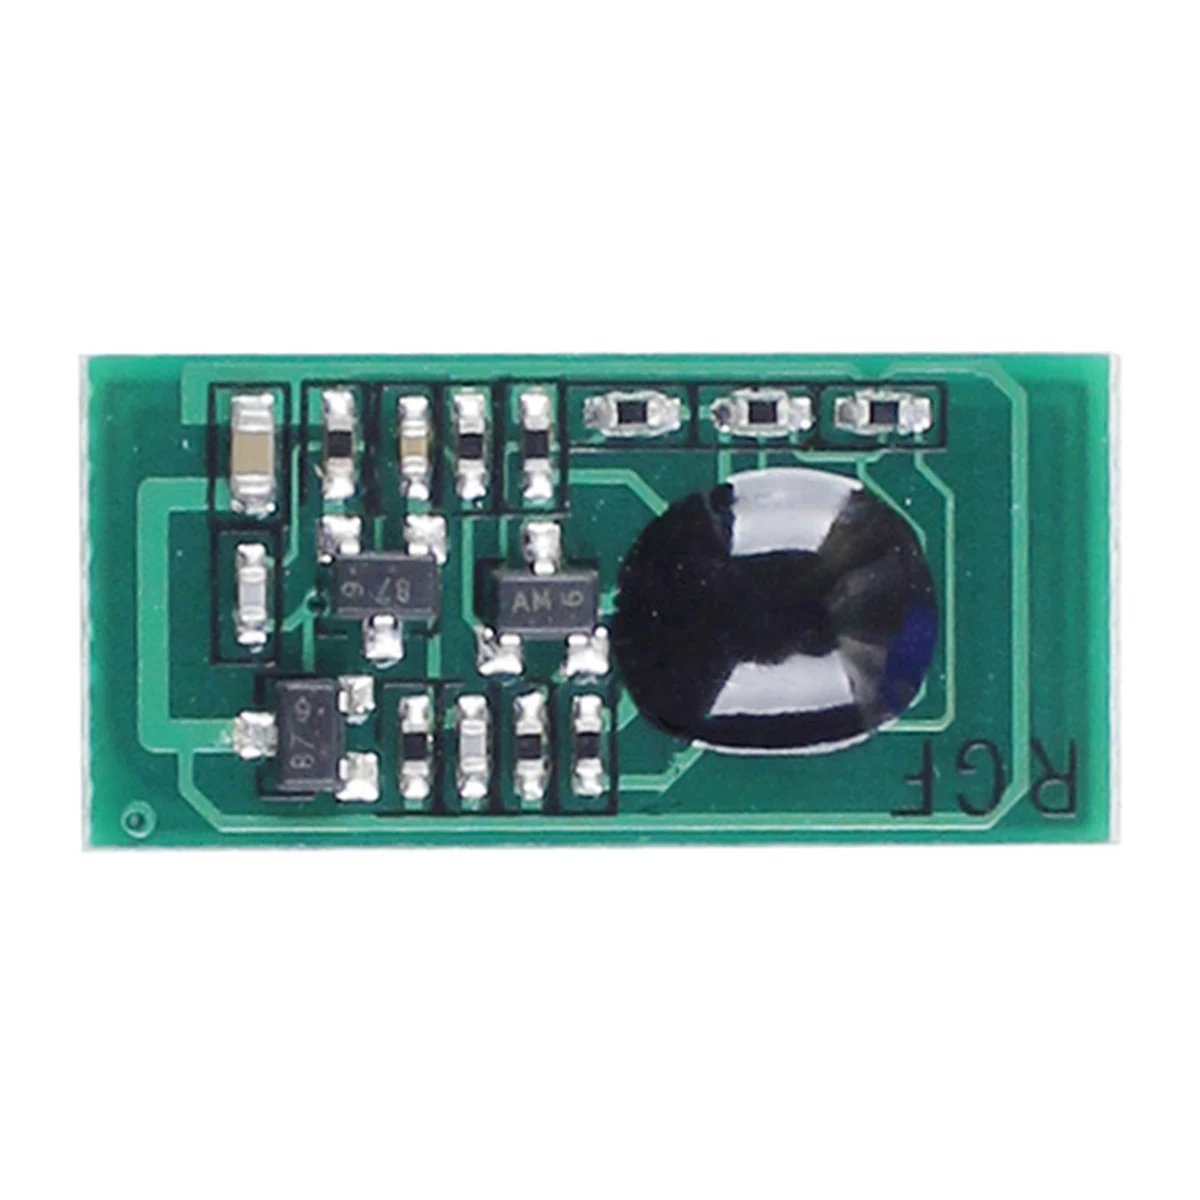 

Toner Chip for Ricoh Gestetner imagio IPSiO Aficio MP-2530 MP-2550 MP-2550SPF MP-2050SPF MP-2051 MP-2551 MP2030 MP2050 AD SPF RC